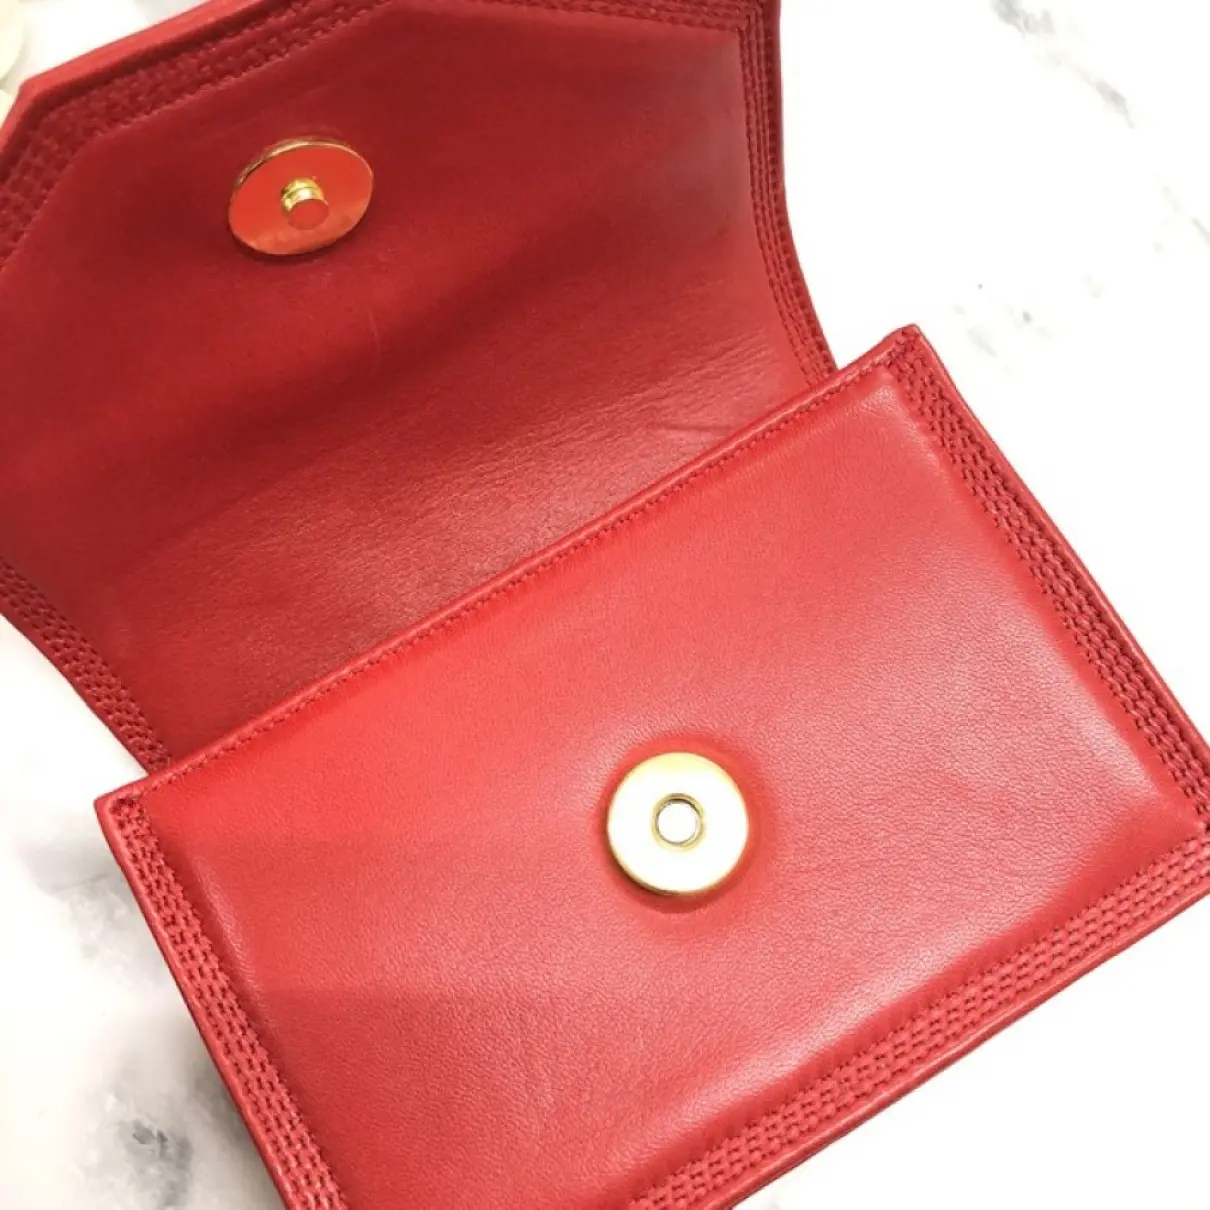 Anagram leather mini bag Loewe - Vintage